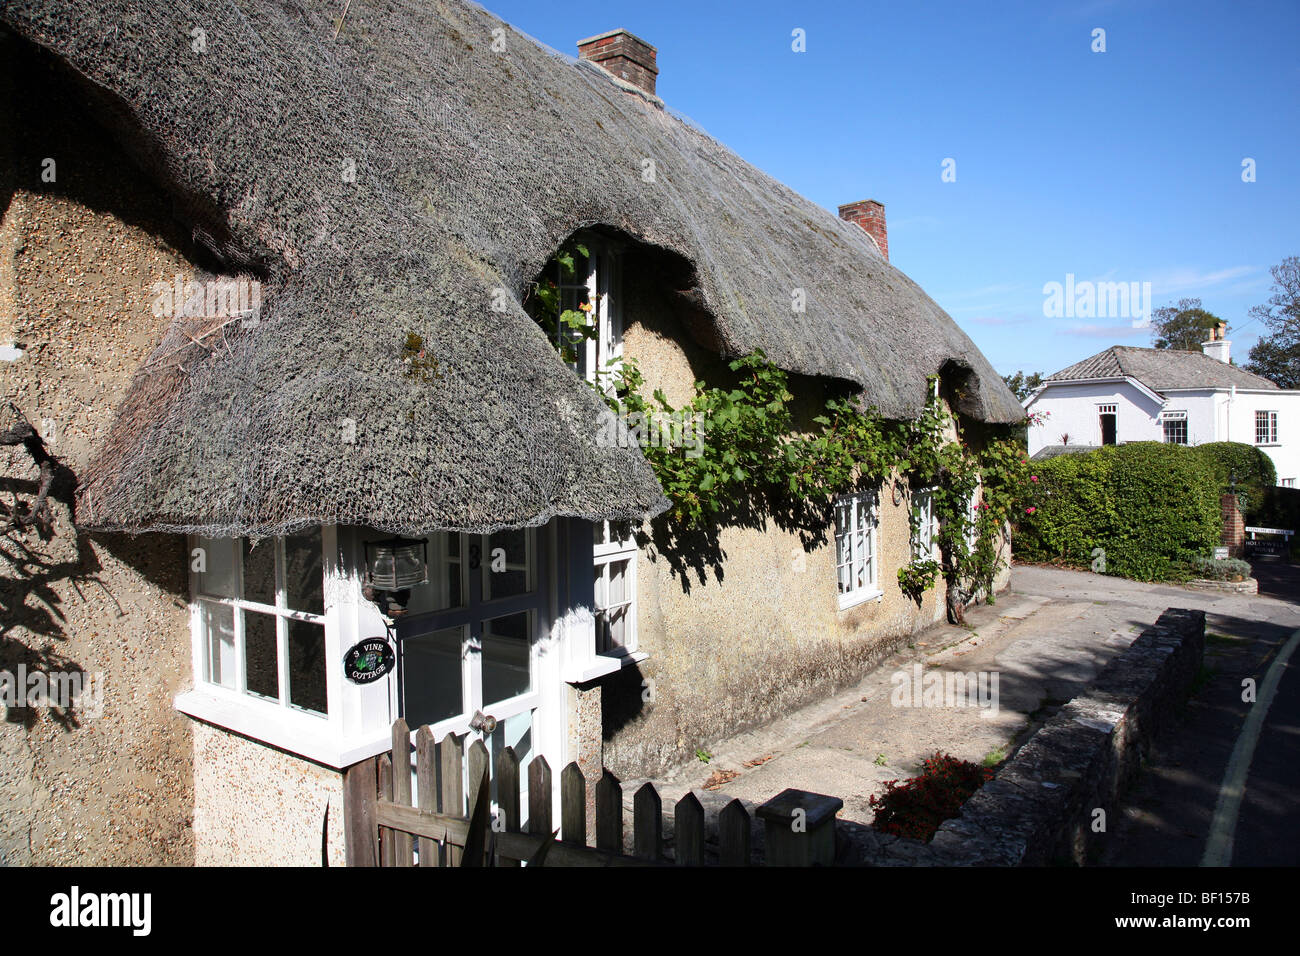 Una imagen perfecta de casa en la aldea costera de Studland Dorset en la Isla de Purbeck Foto de stock